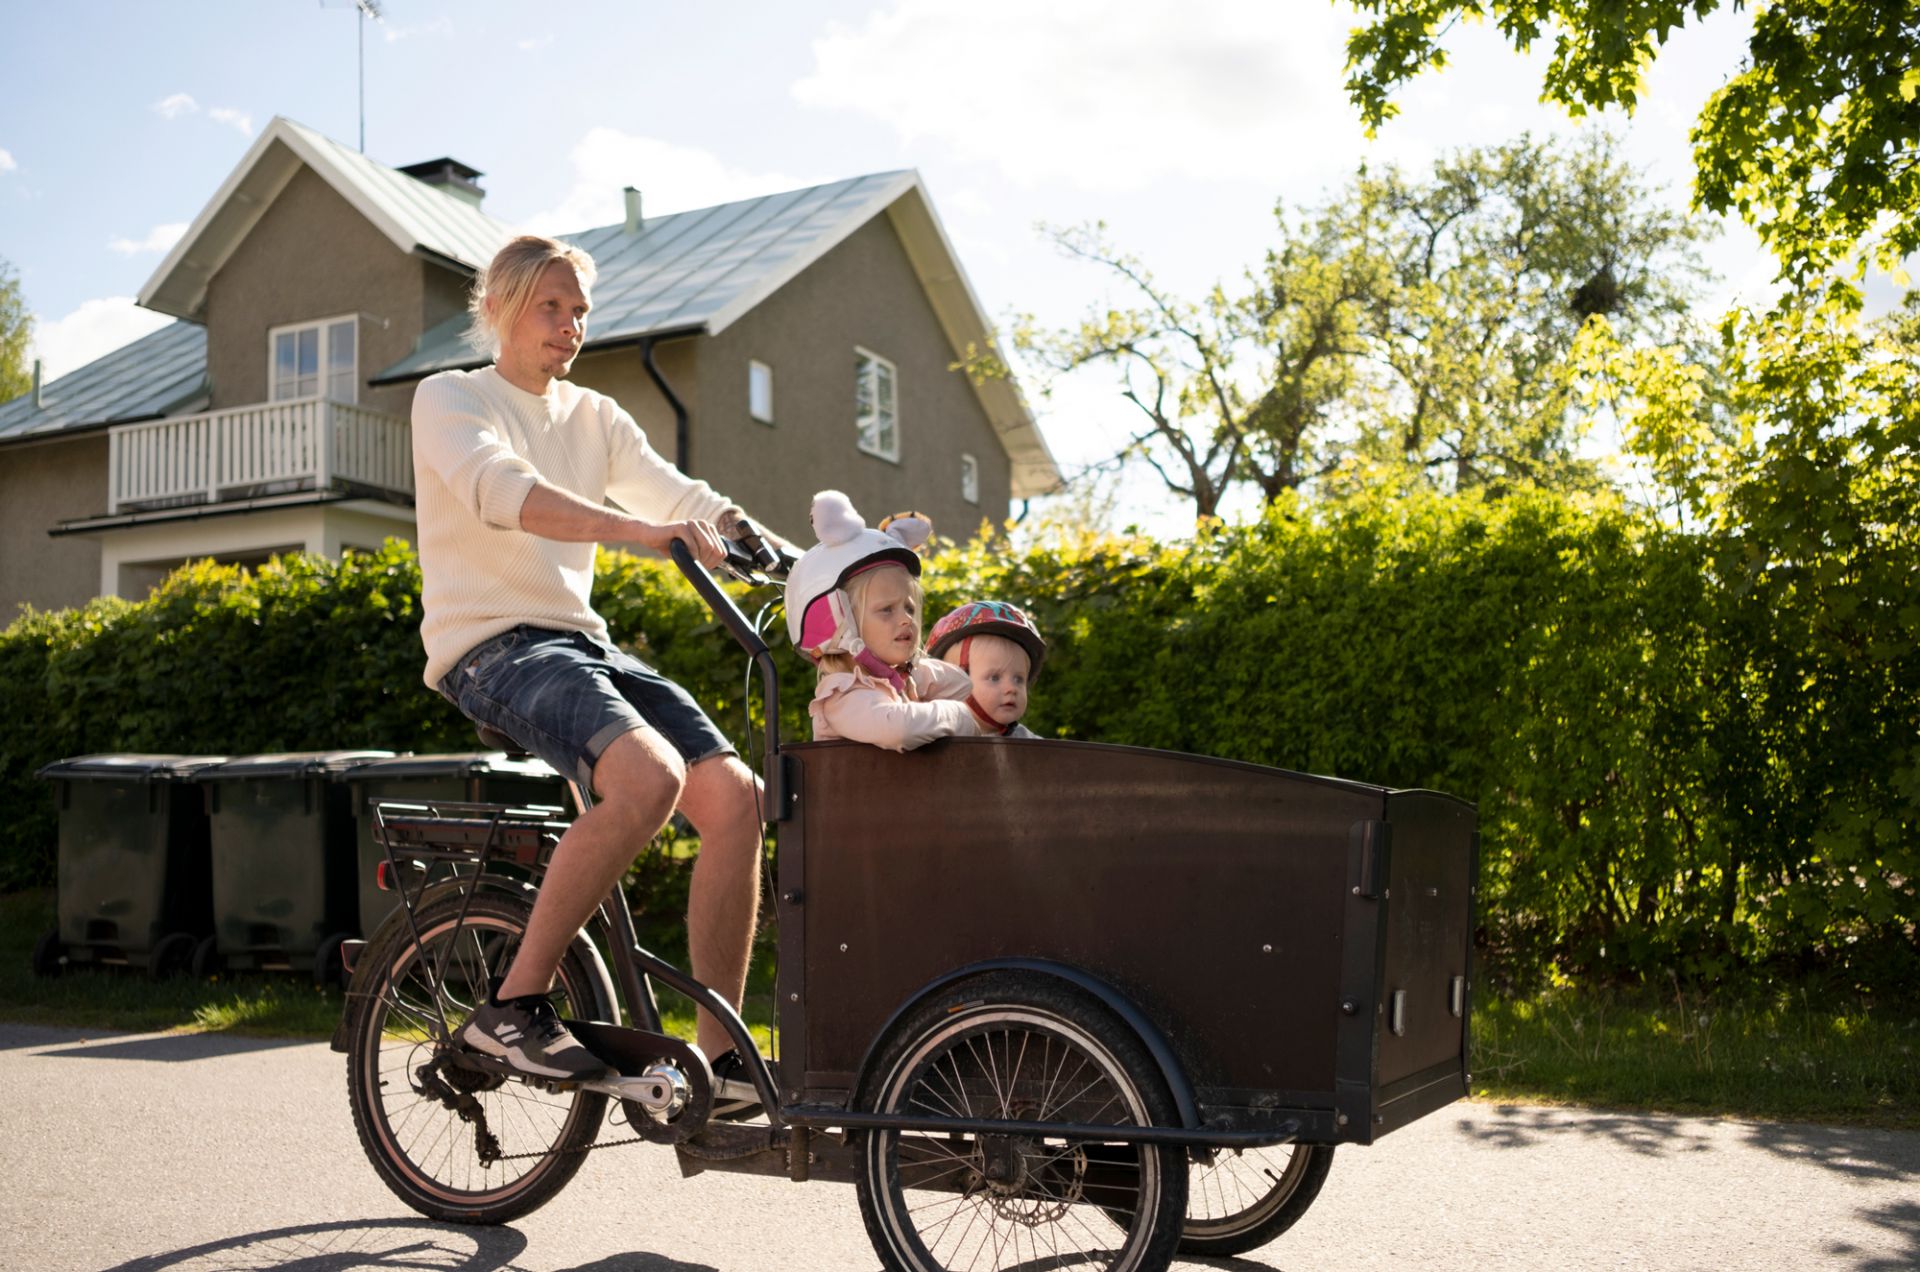 En man cyklar på en lastcykel där två barn sitter på flaket framför cykeln. De cyklar framför en grön häck.